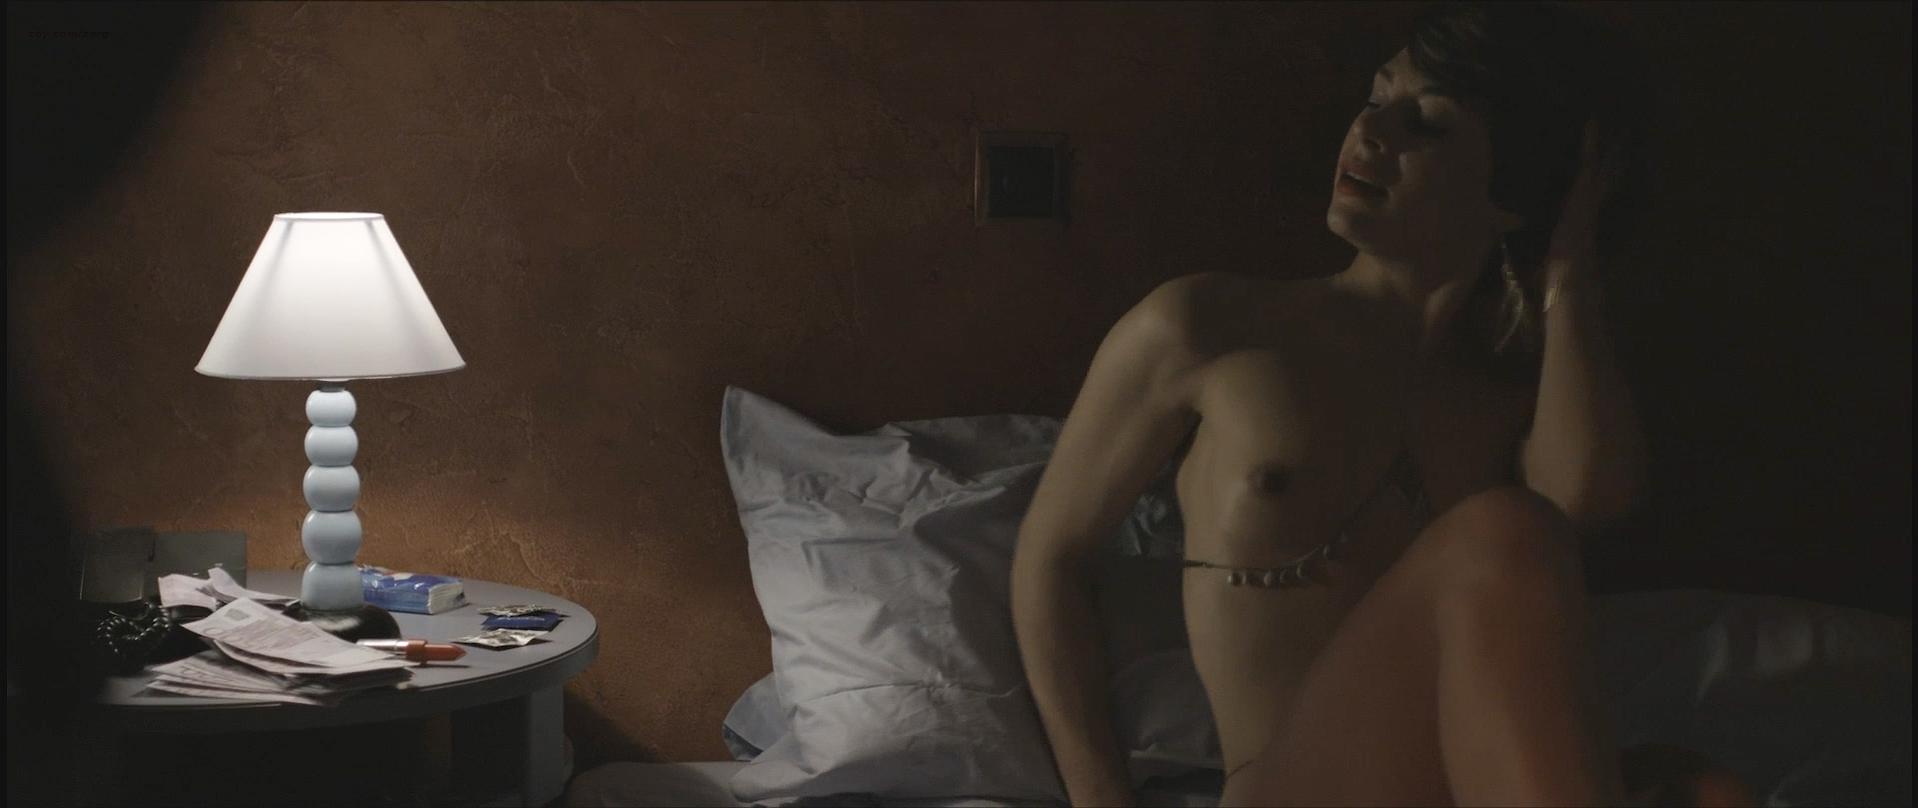 Nude Video Celebs Adriana Camara Nude Alejandra Lorente Nude Sicarivs La Noche Y El